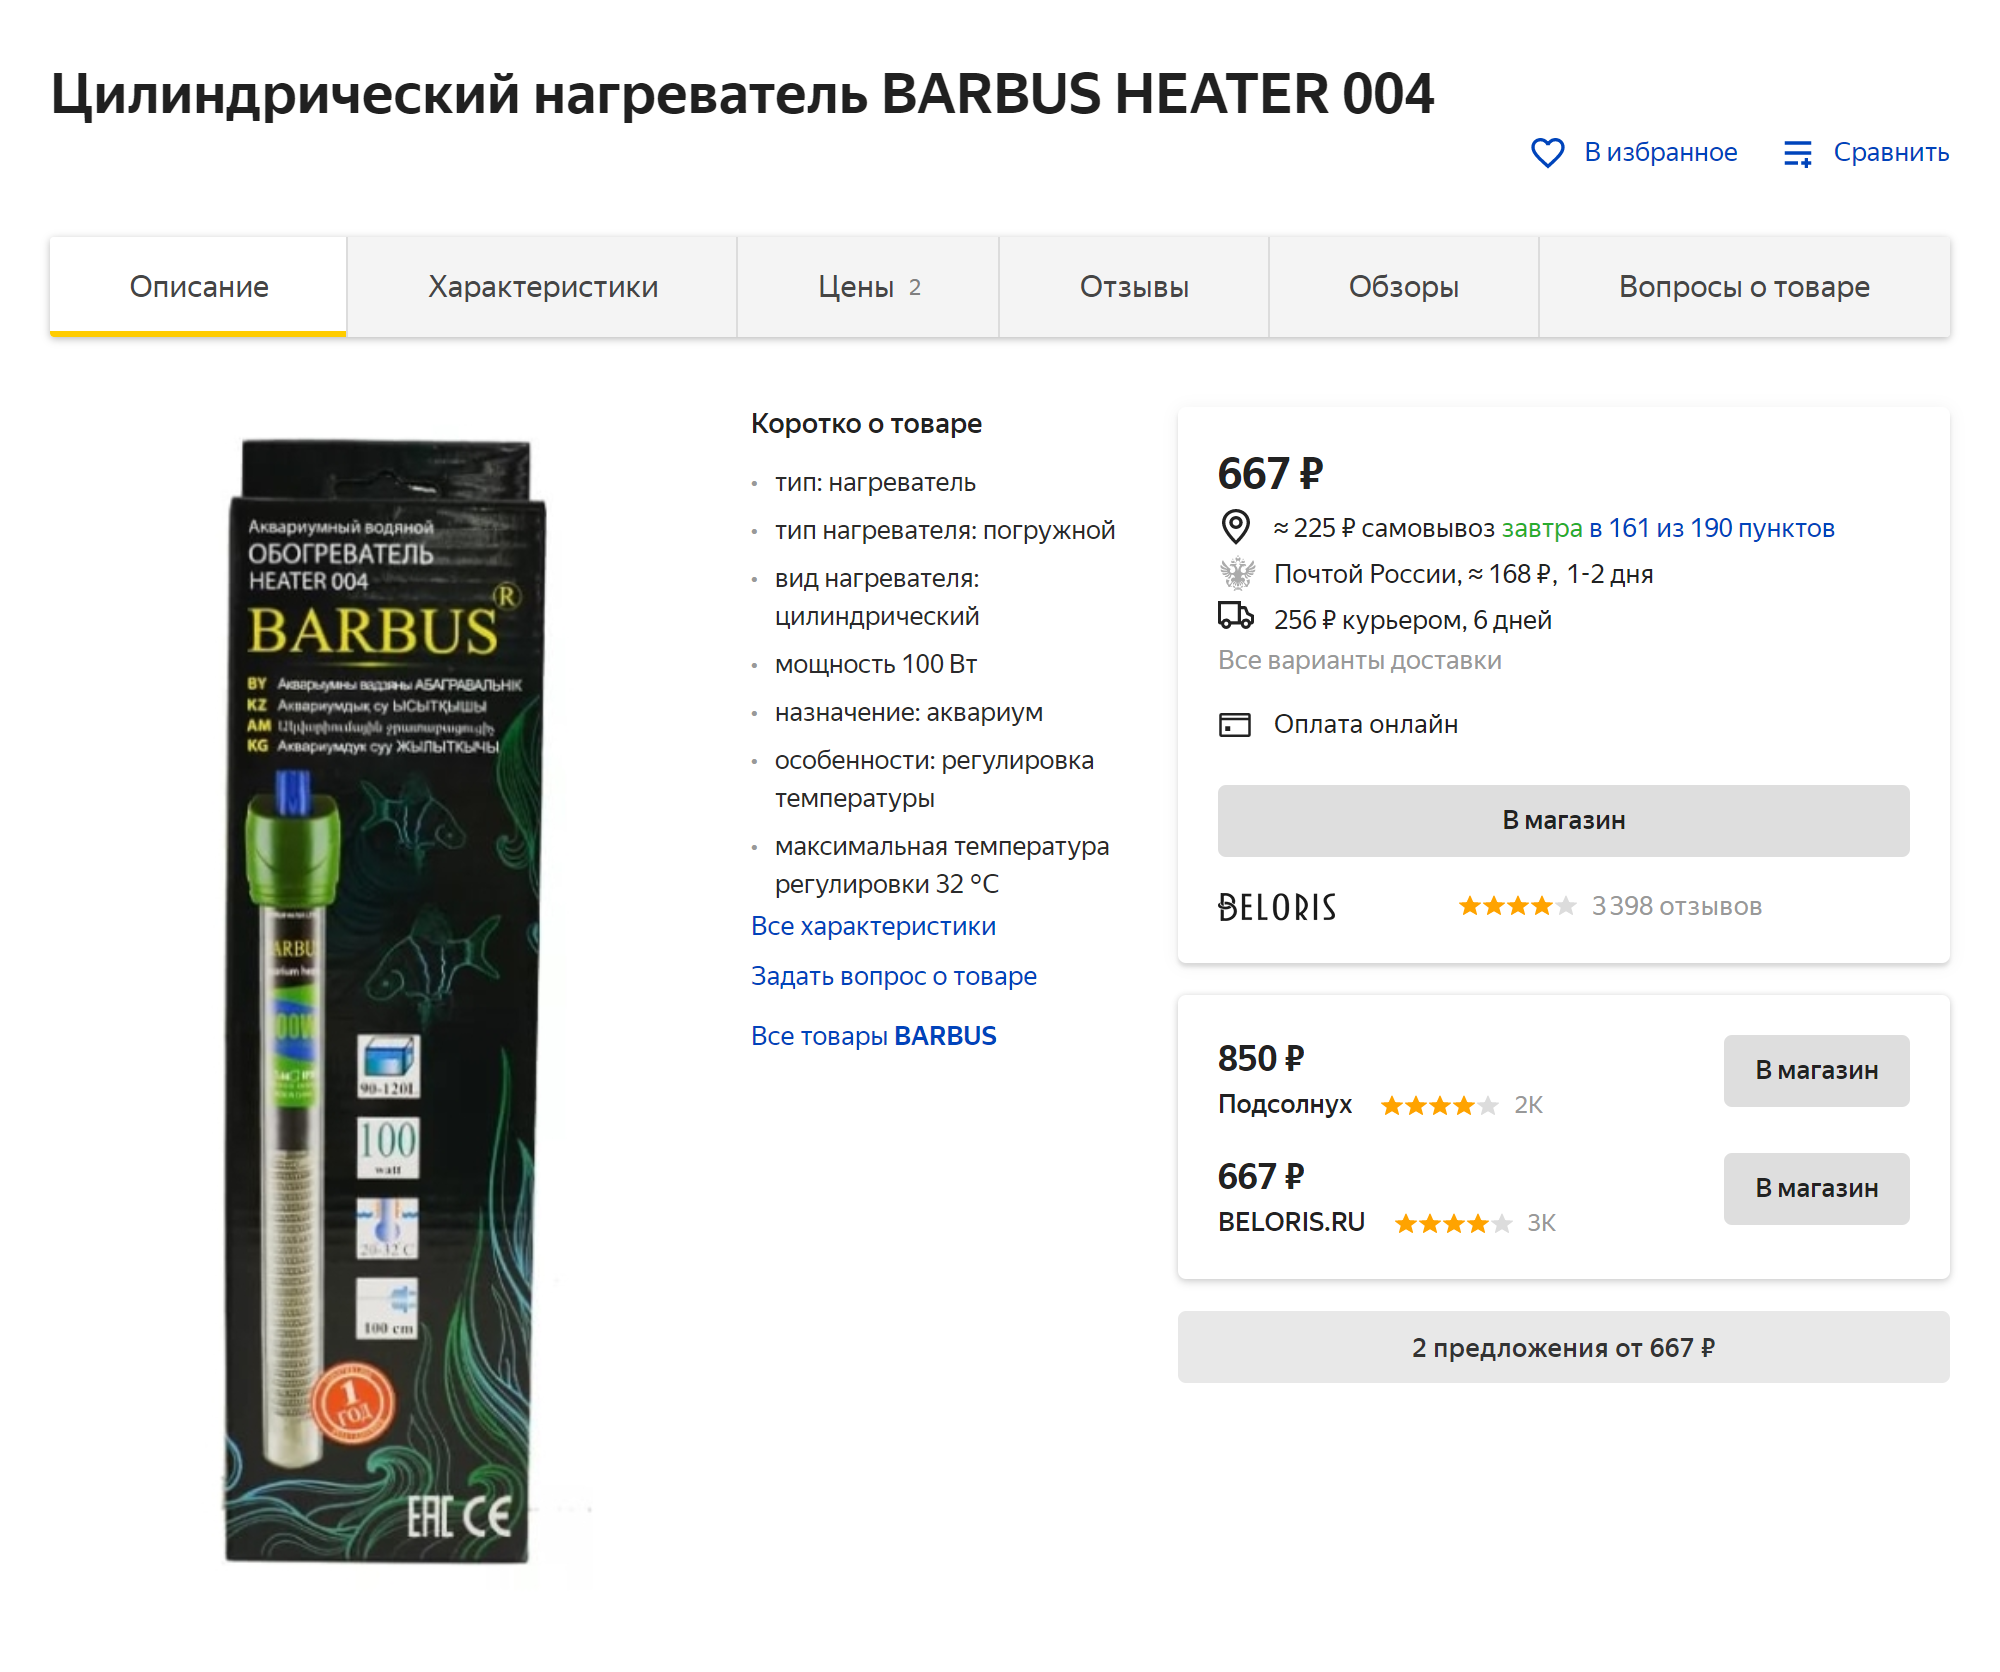 Нагреватель фирмы Barbus, стеклянный, мощностью 100 Вт, на объем 90⁠—⁠120 литров стоит 677 ₽. Источник: «Яндекс⁠-⁠маркет»